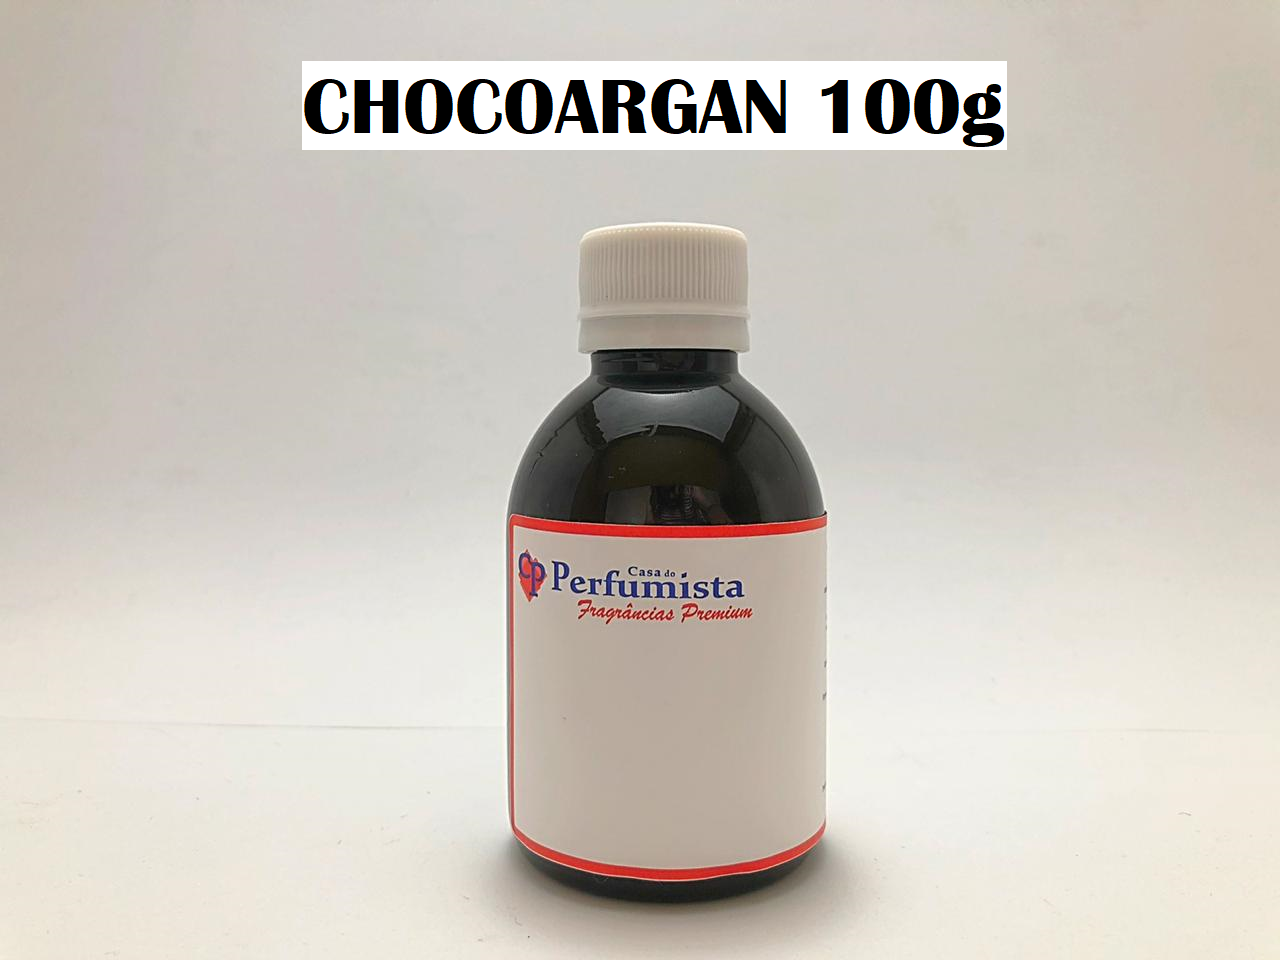 CHOCOARGAN - 100g